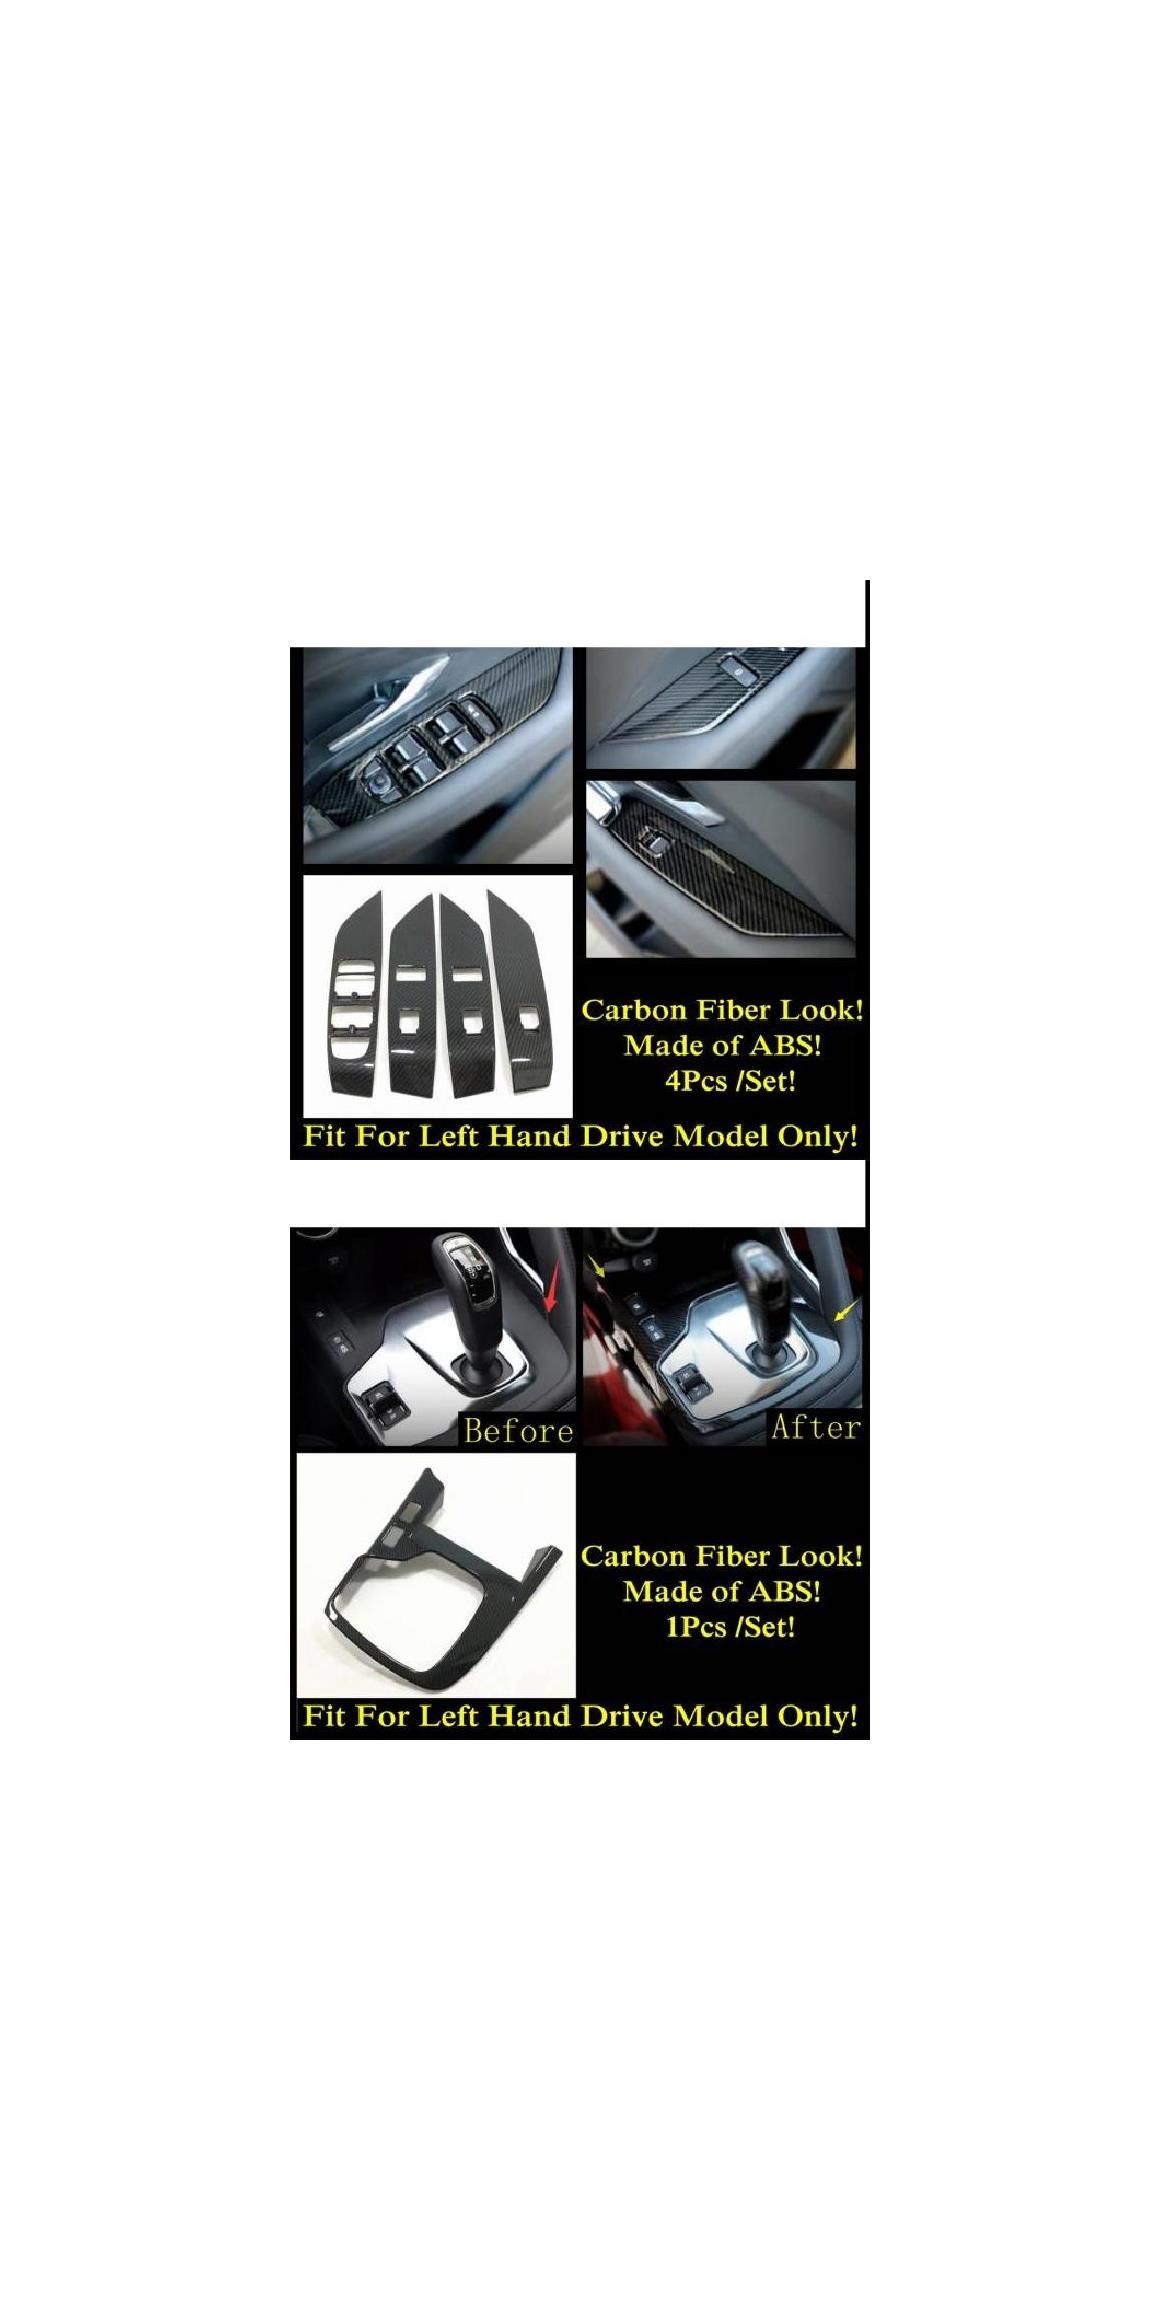 AC エア ハンドル ボウル ウインドウ リフト ヘッド ライト ギア パネル カバー トリム 適用: ジャガー/JAGUAR E-ペース 2018-2020 カーボンファイバー インテリア アクセサリー タイプB・タイプH AL-PP-2031 AL Interior parts for cars